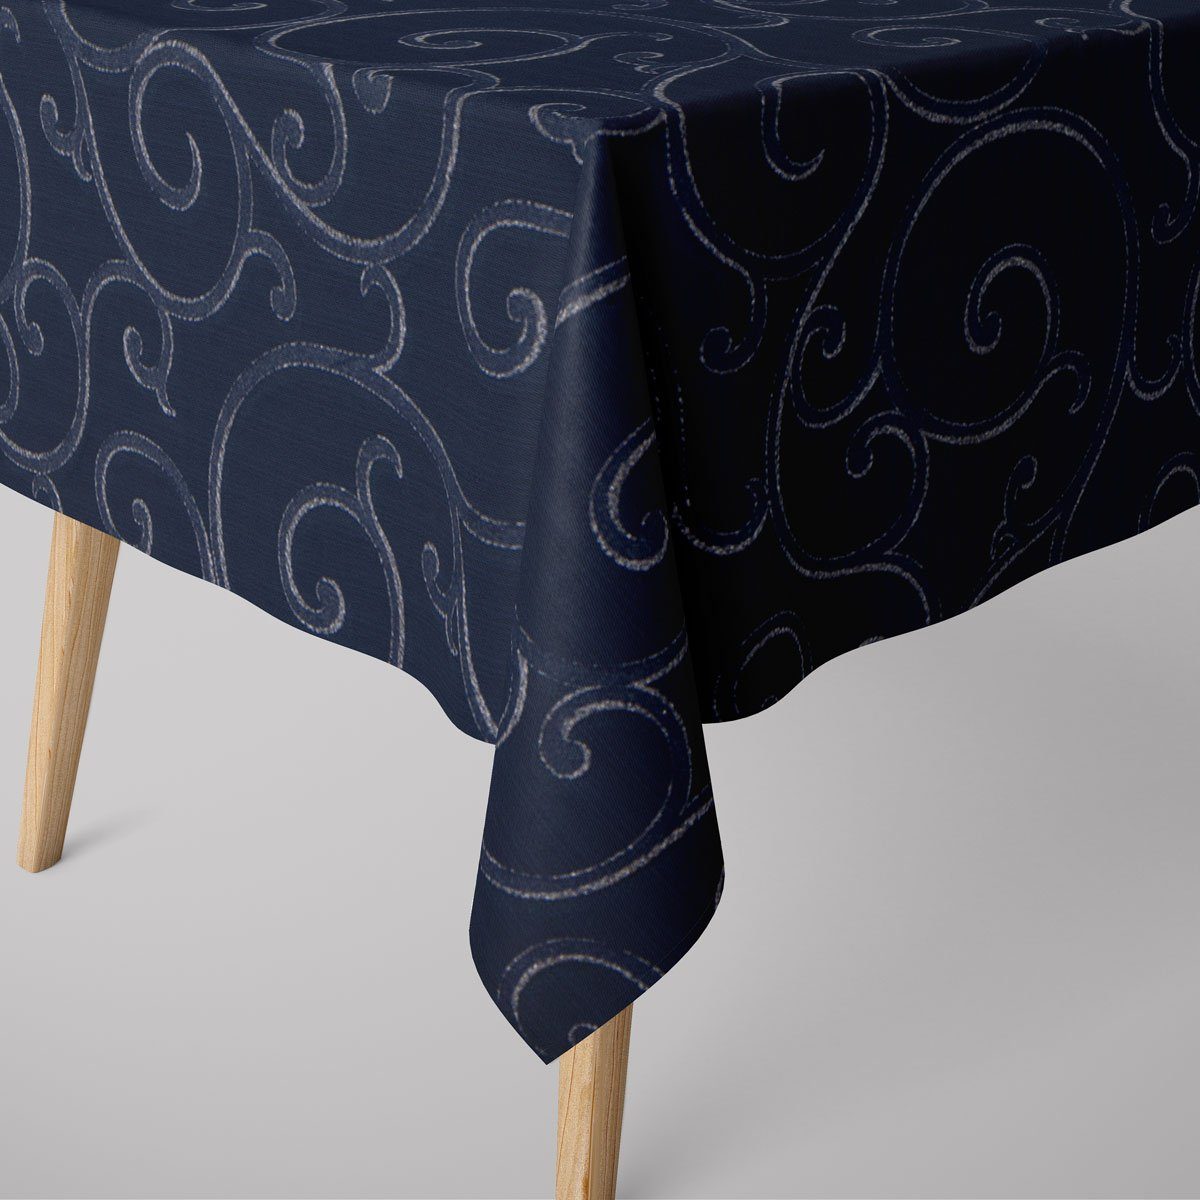 Tischdecke silber, LEBEN. Schnörkel dunkelblau SCHÖNER Tischdecke Ornamente Lurex handmade SCHÖNER LEBEN.